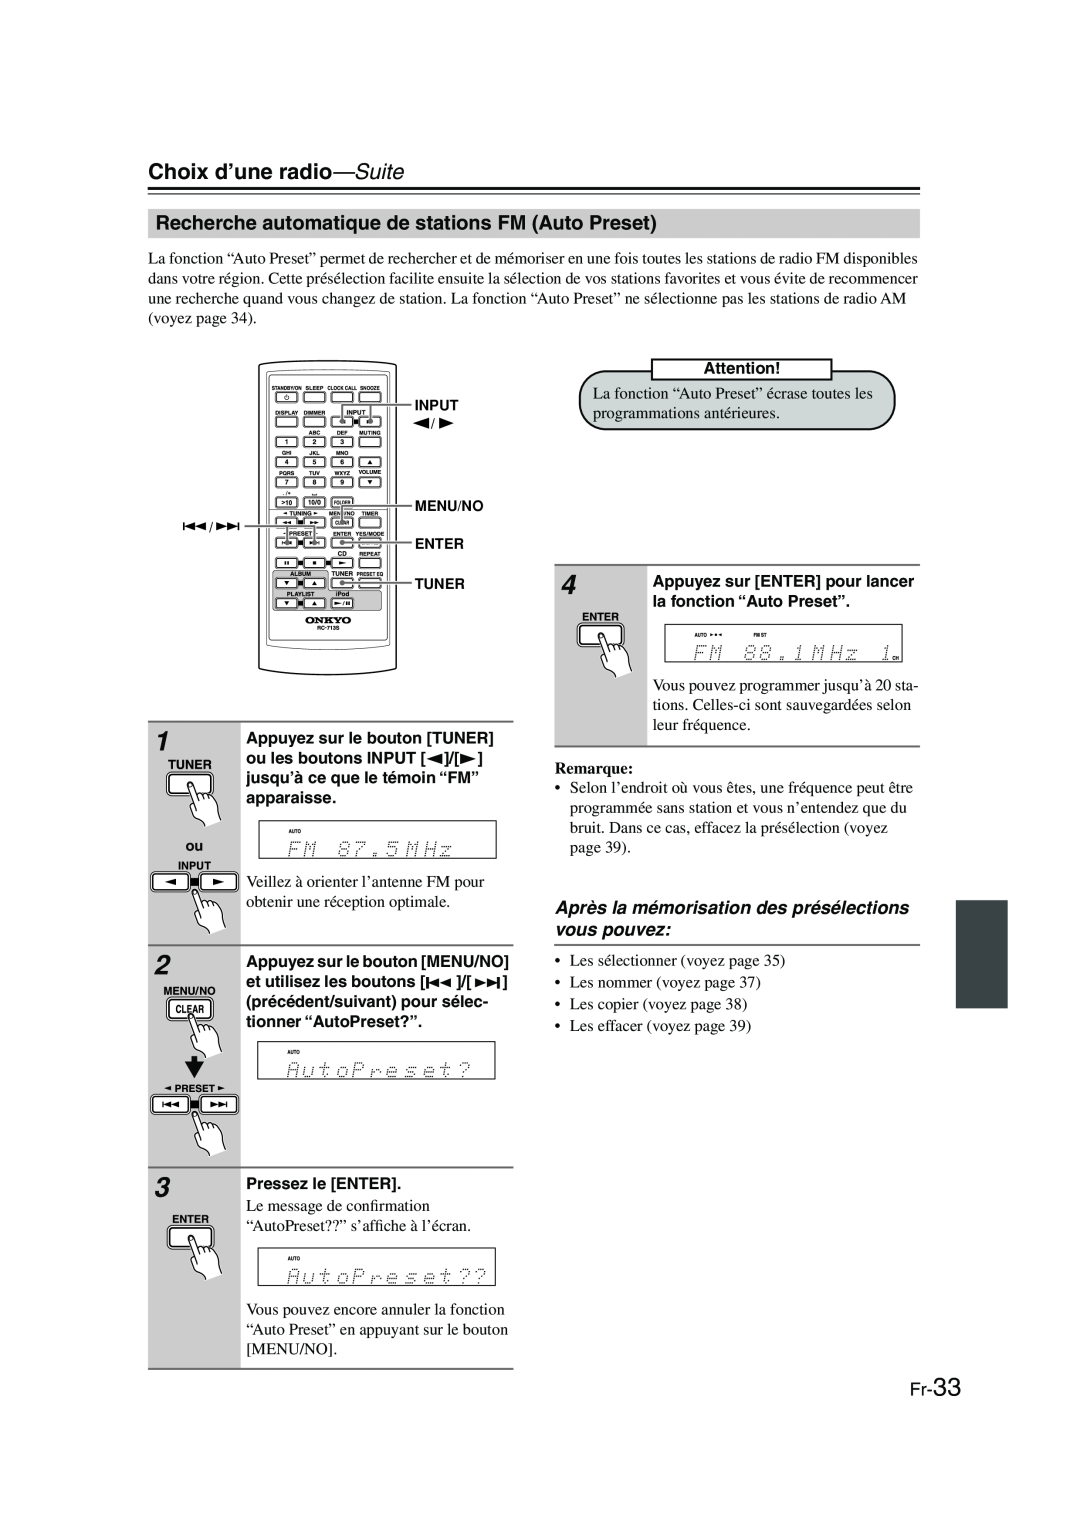 Onkyo CBX-300 instruction manual Choix d’une radio—Suite, Recherche automatique de stations FM Auto Preset, Fr-33, Remarque 